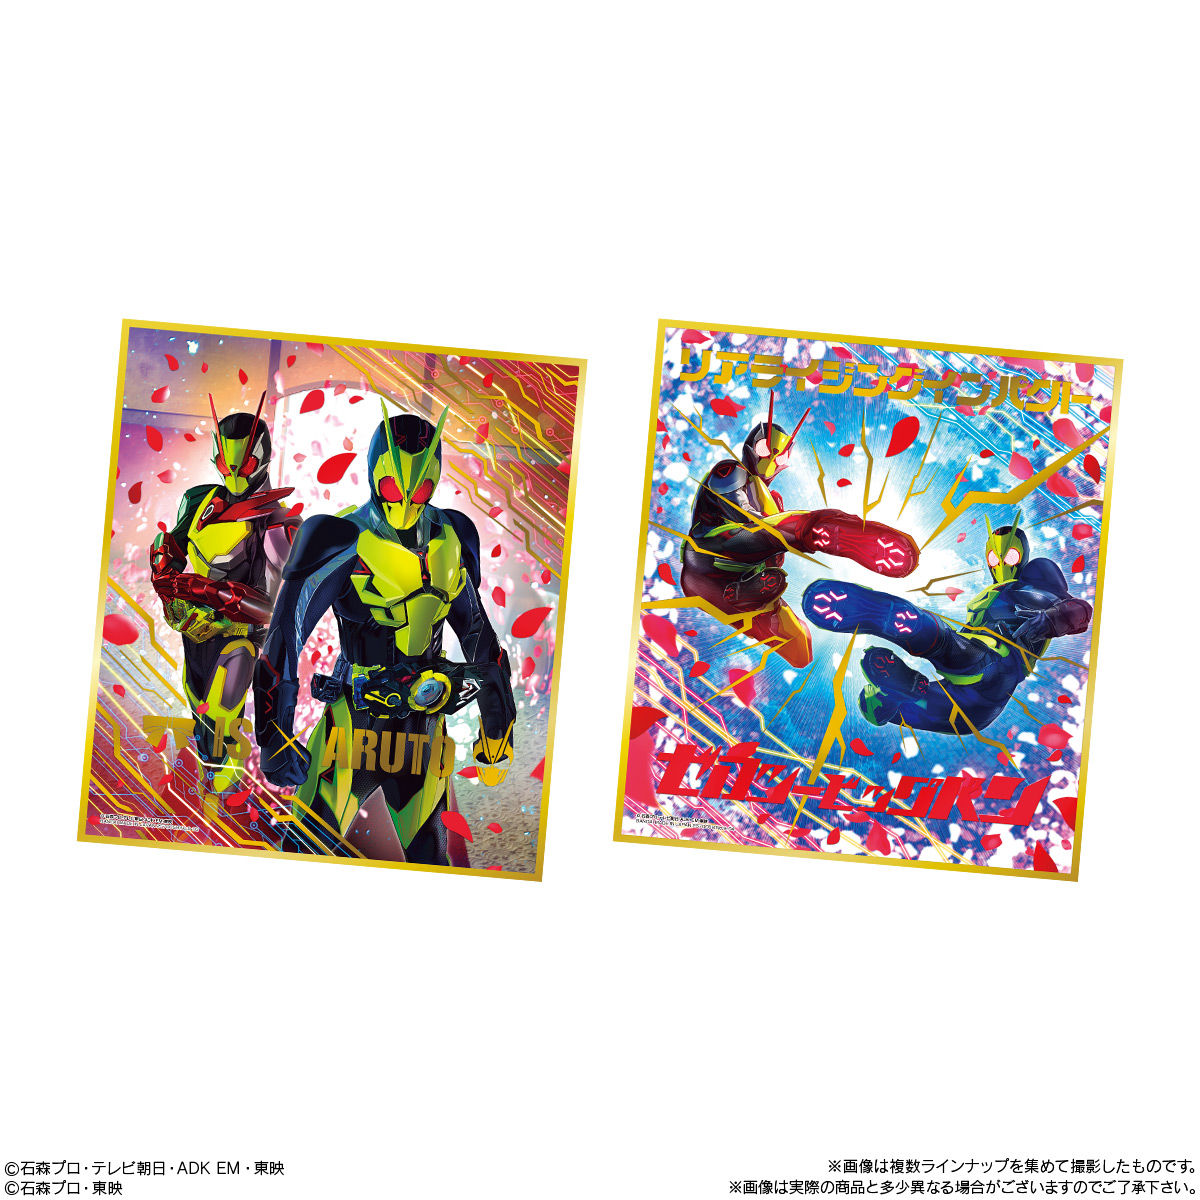 【食玩】『仮面ライダー色紙ART9』10個入りBOX-003